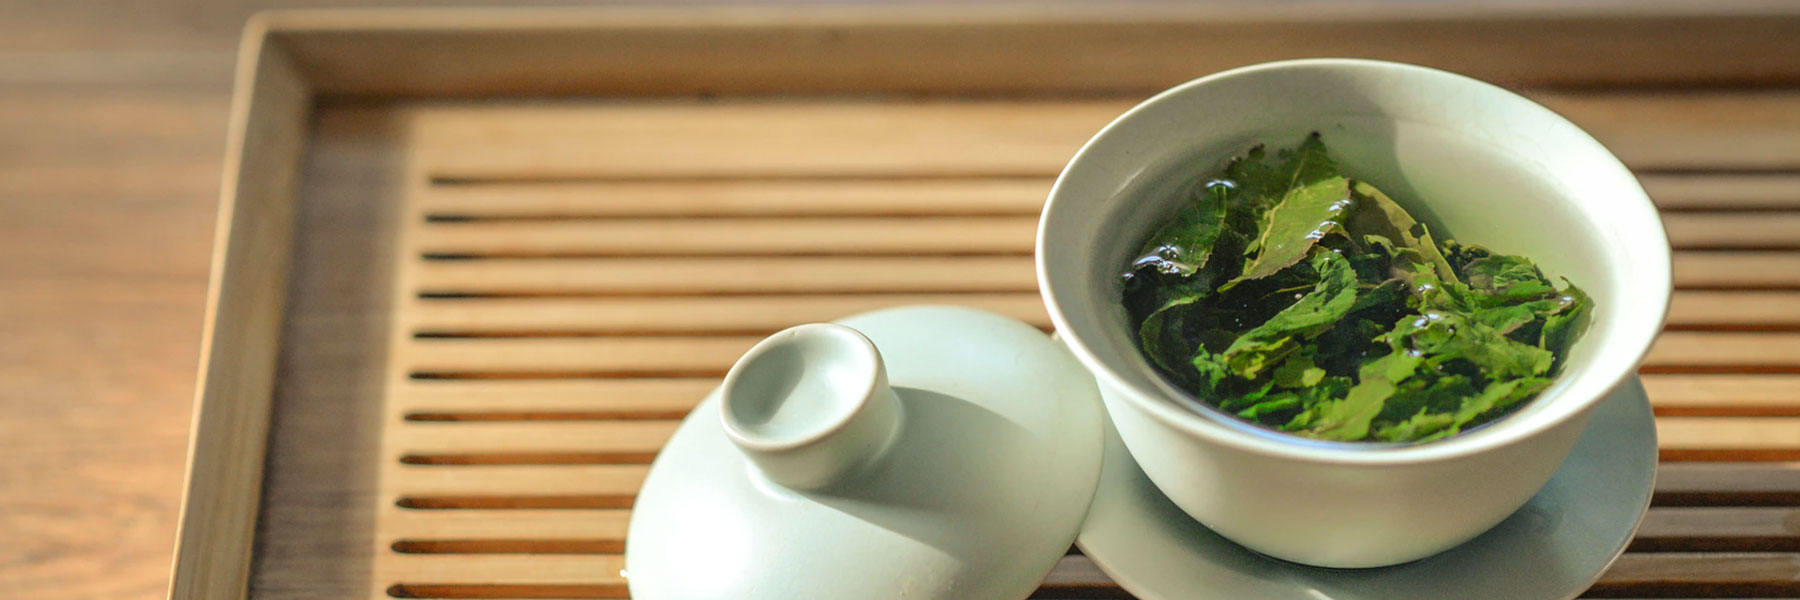 Réduire le cancer avec une tasse de thé vert par jour